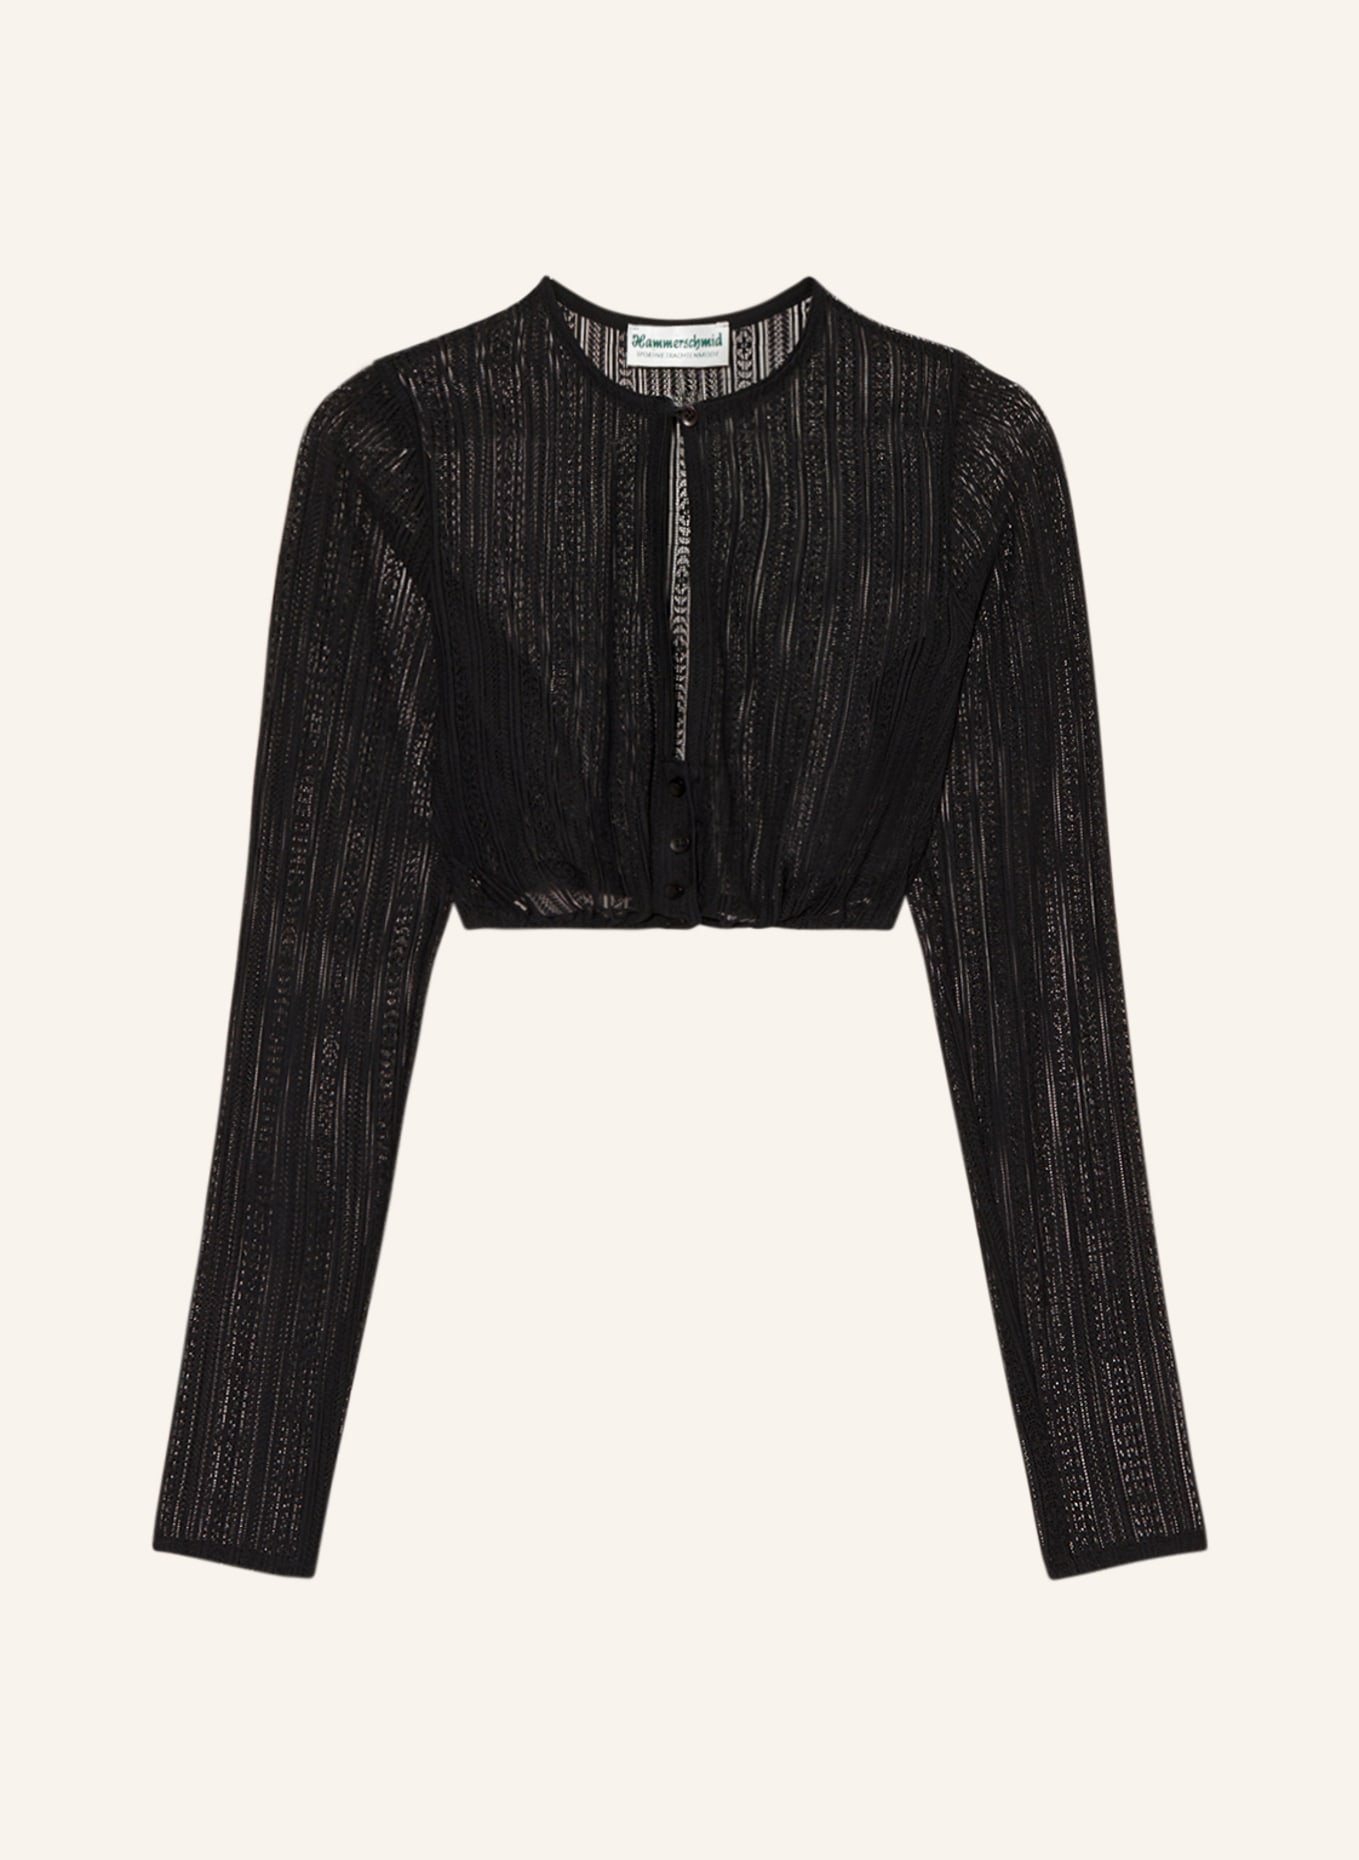 Hammerschmid Dirndl blouse made of lace, Color: BLACK (Image 1)